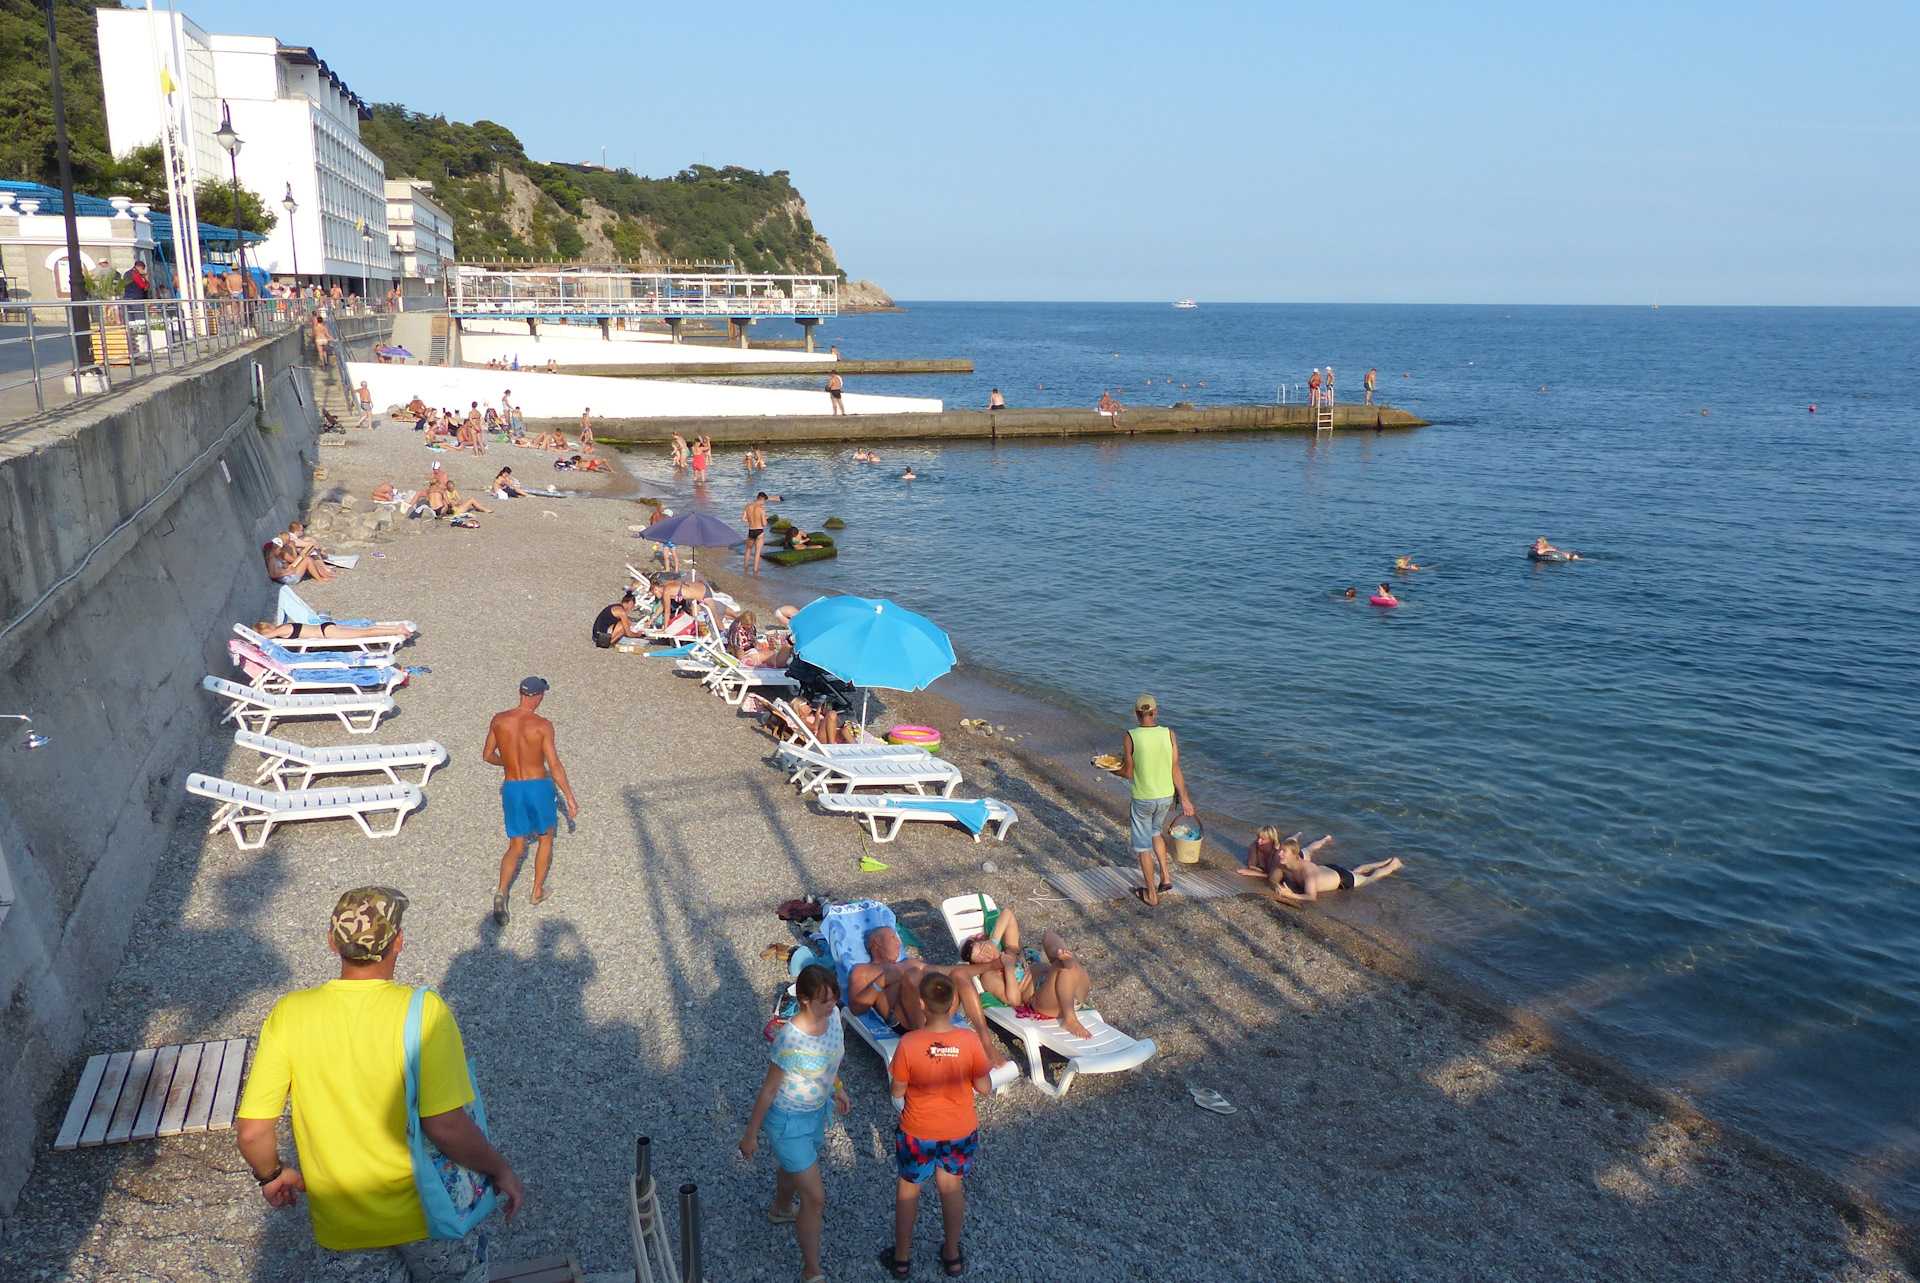 Лучшие пляжи крыма: массандровский пляж в ялте, пляжи севастополя и алушты